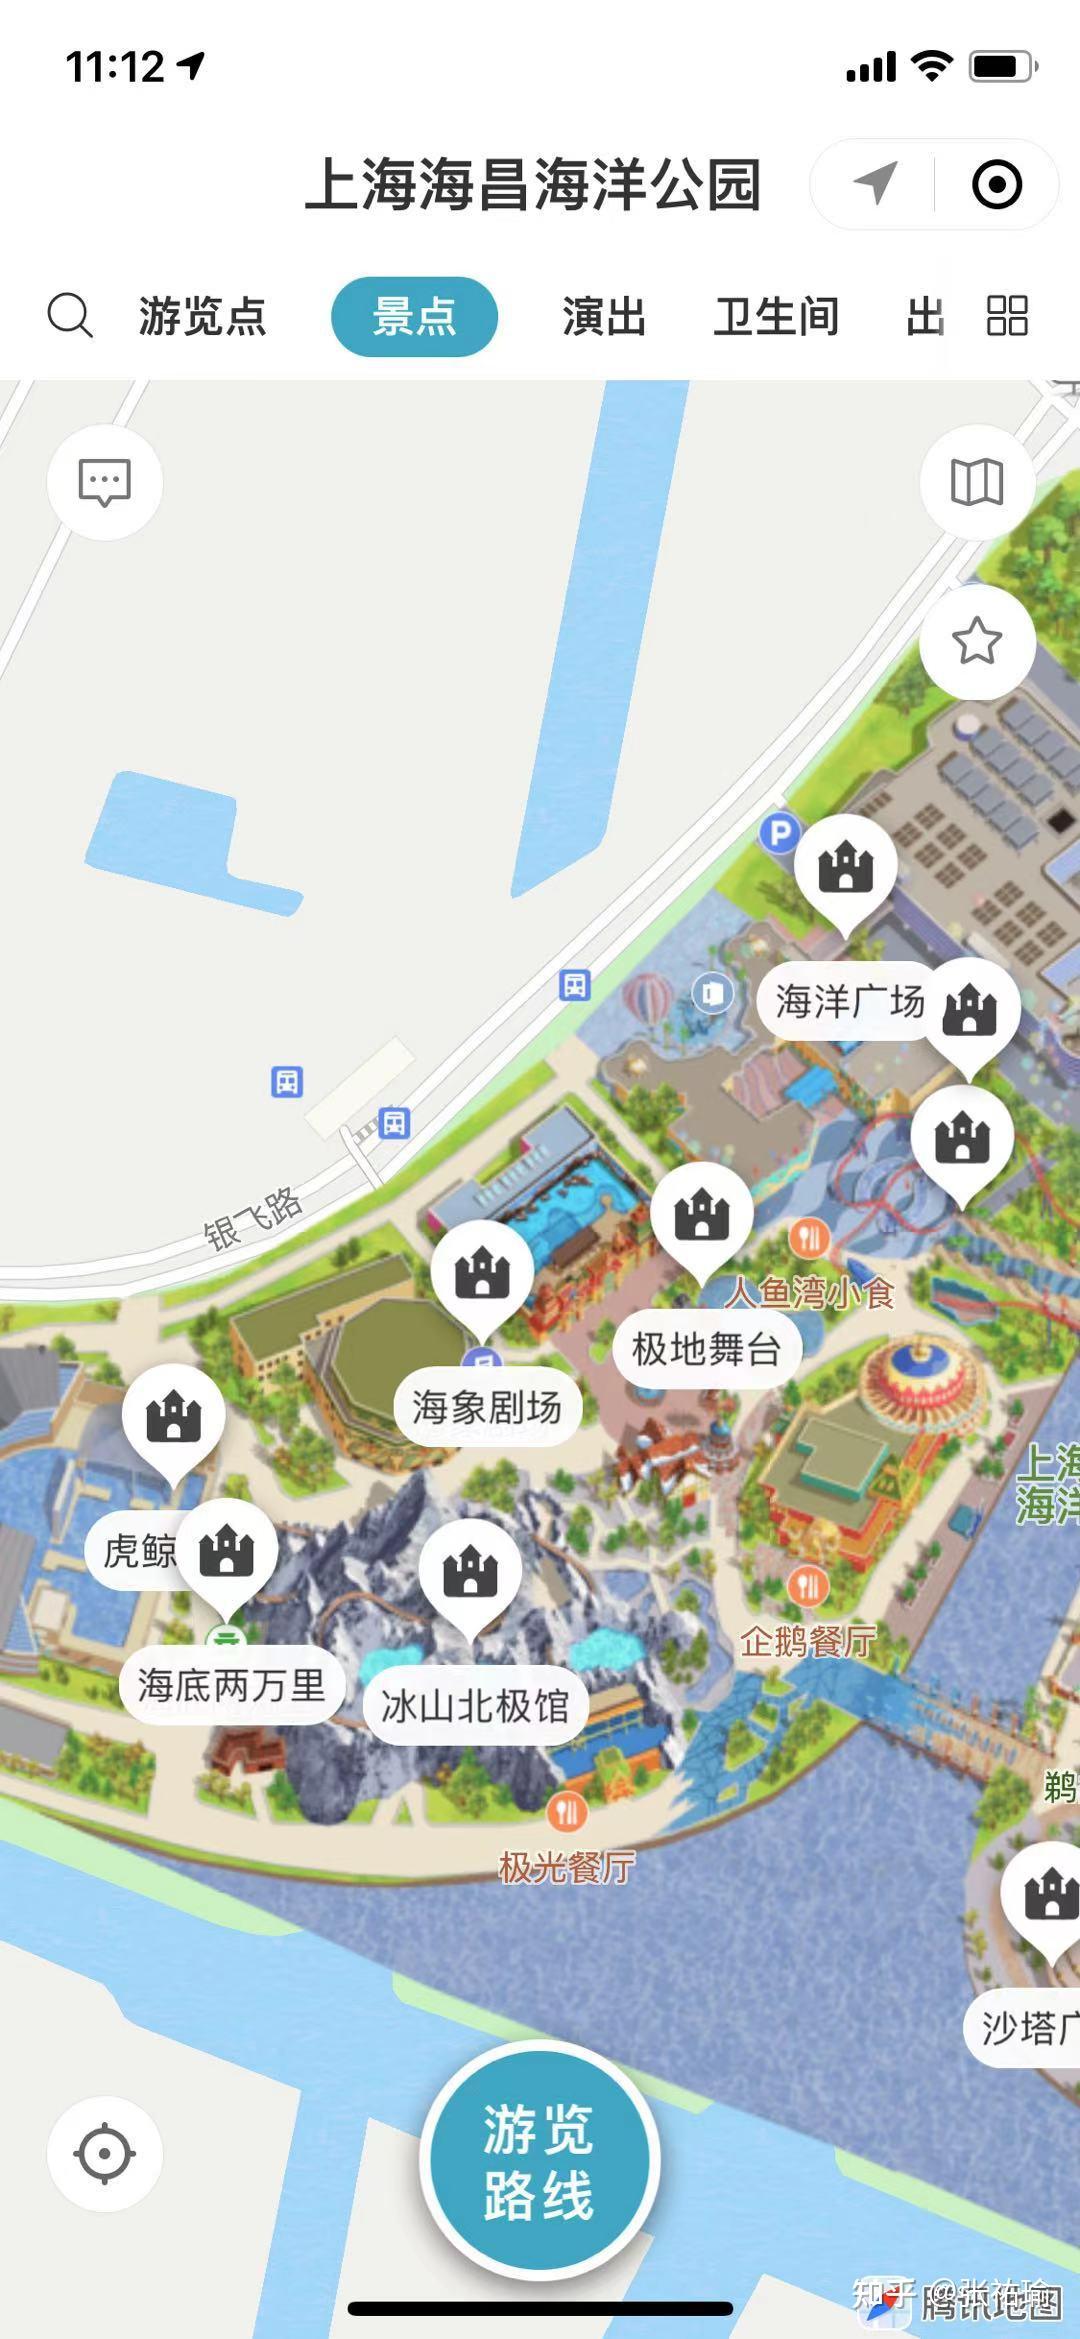 上海海昌导游地图图片